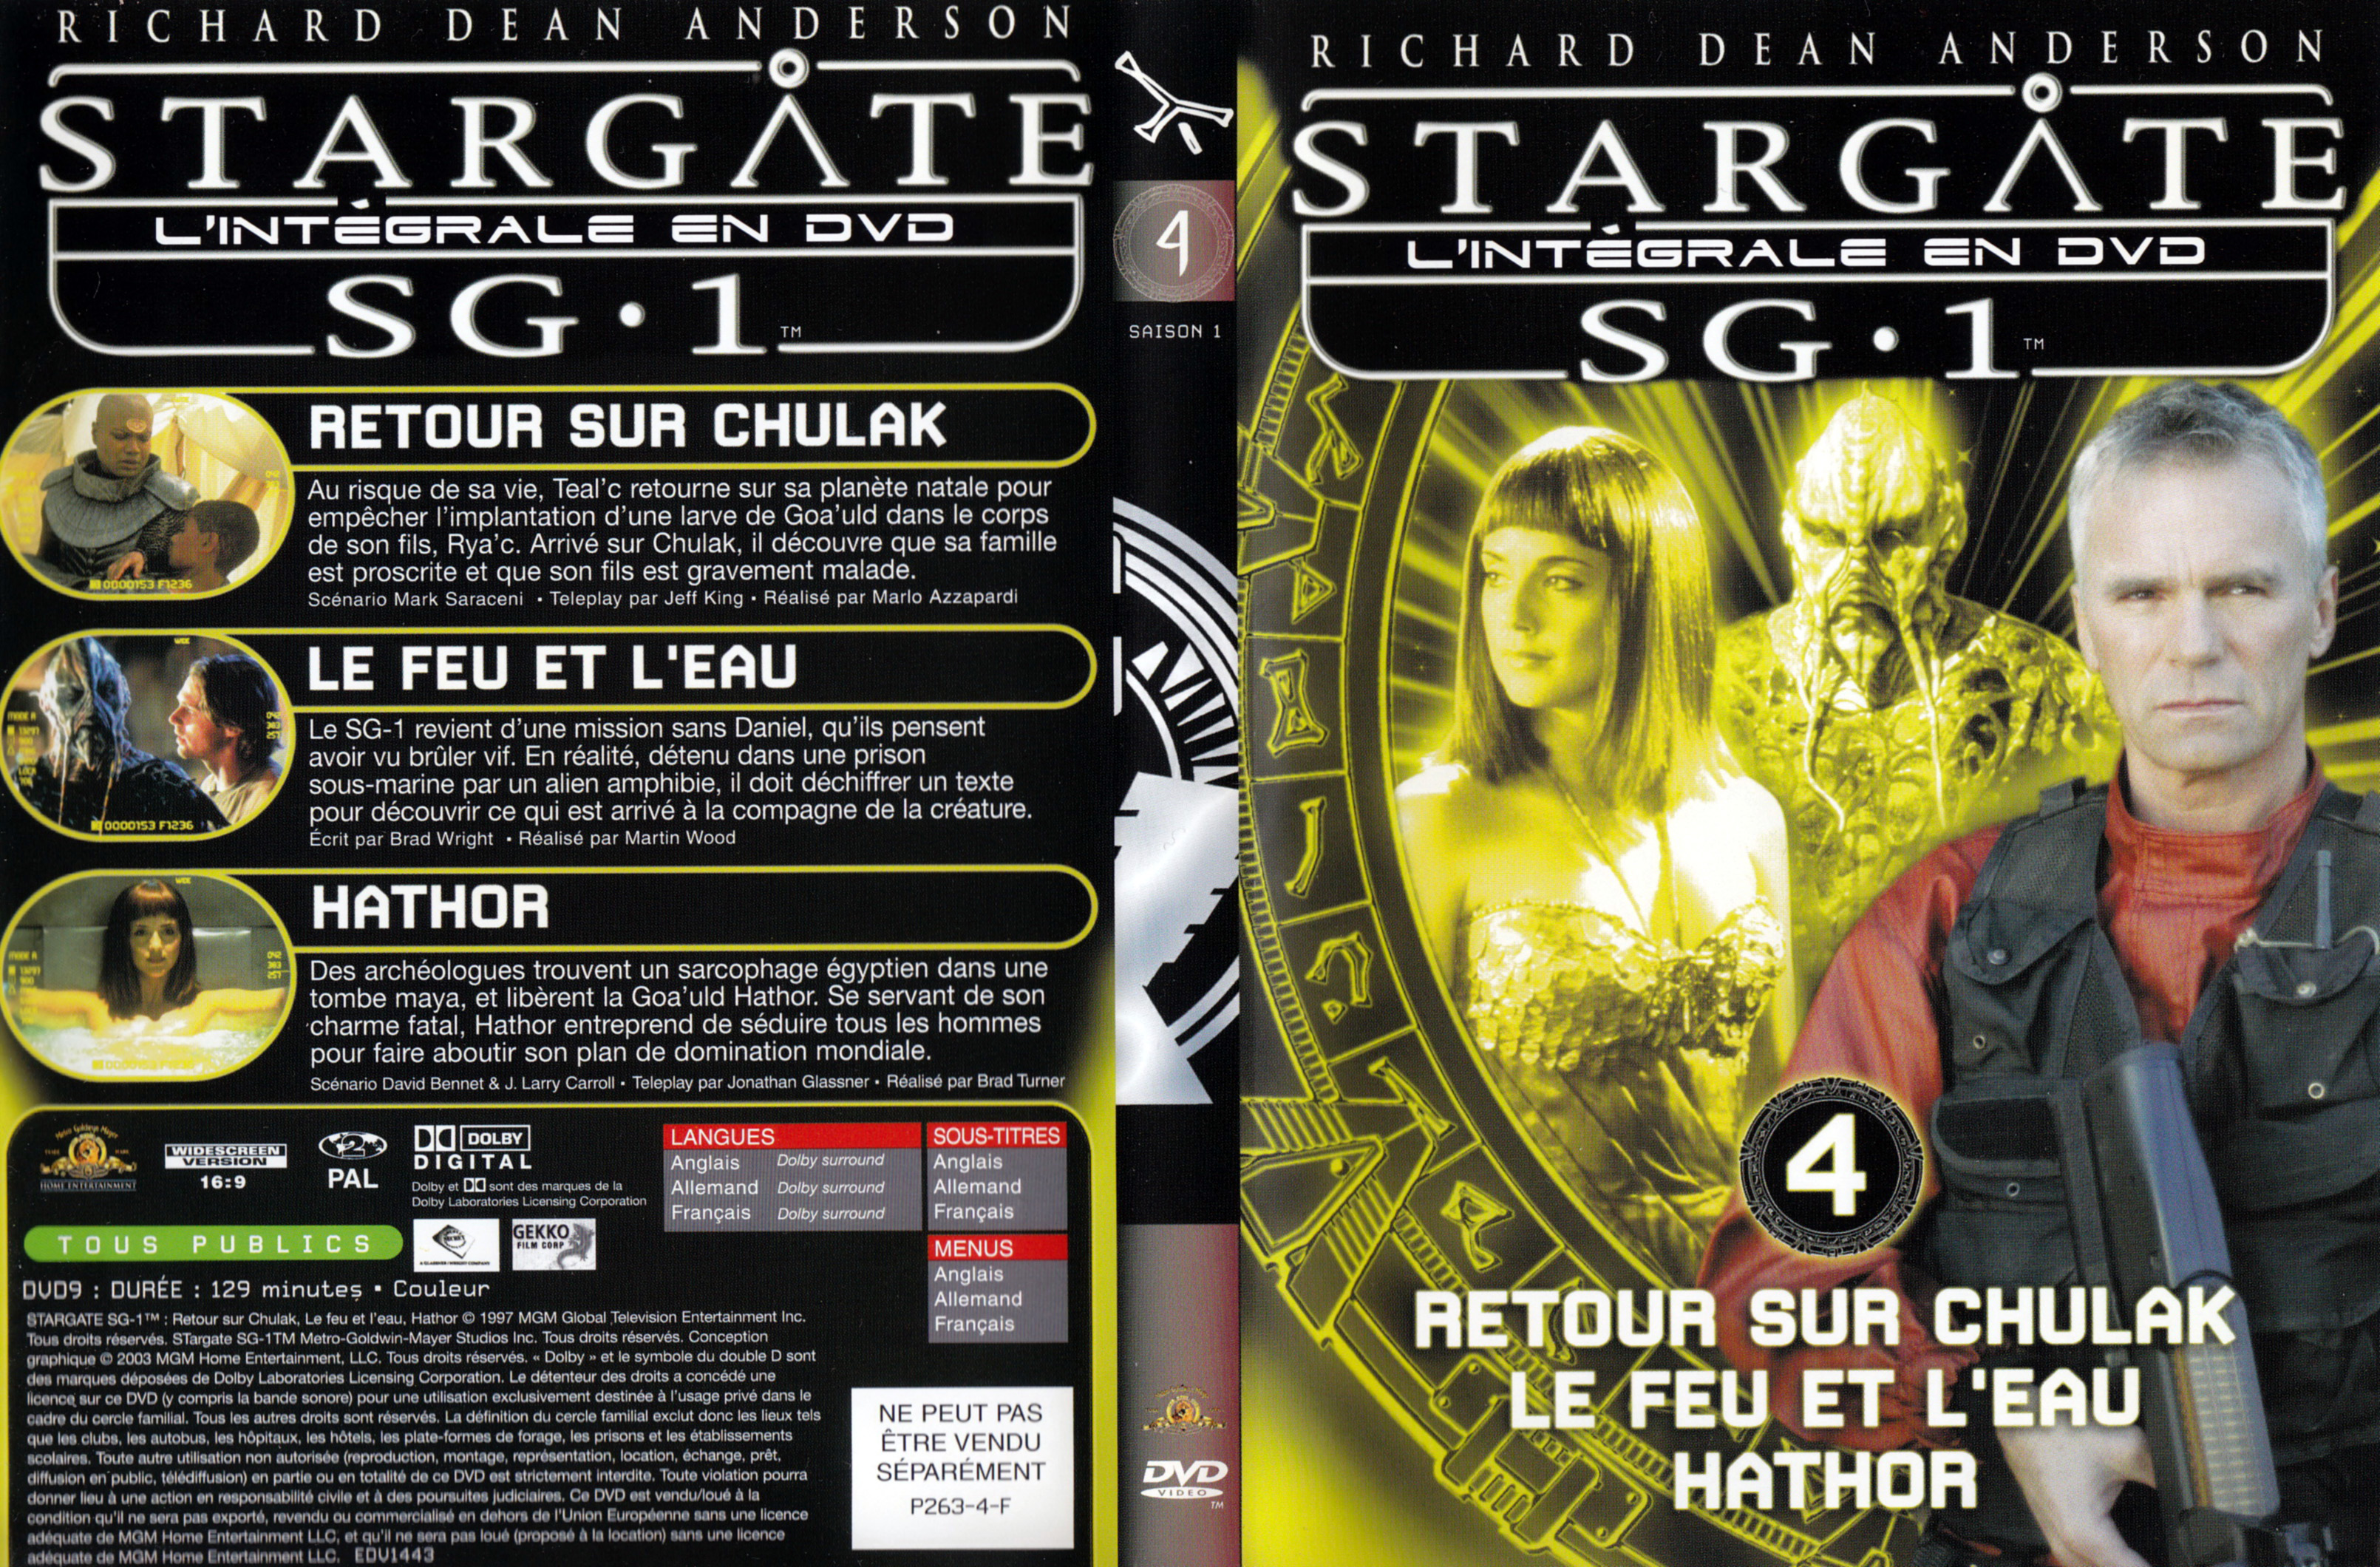 Jaquette DVD Stargate SG1 Intgrale Saison 1 vol 04